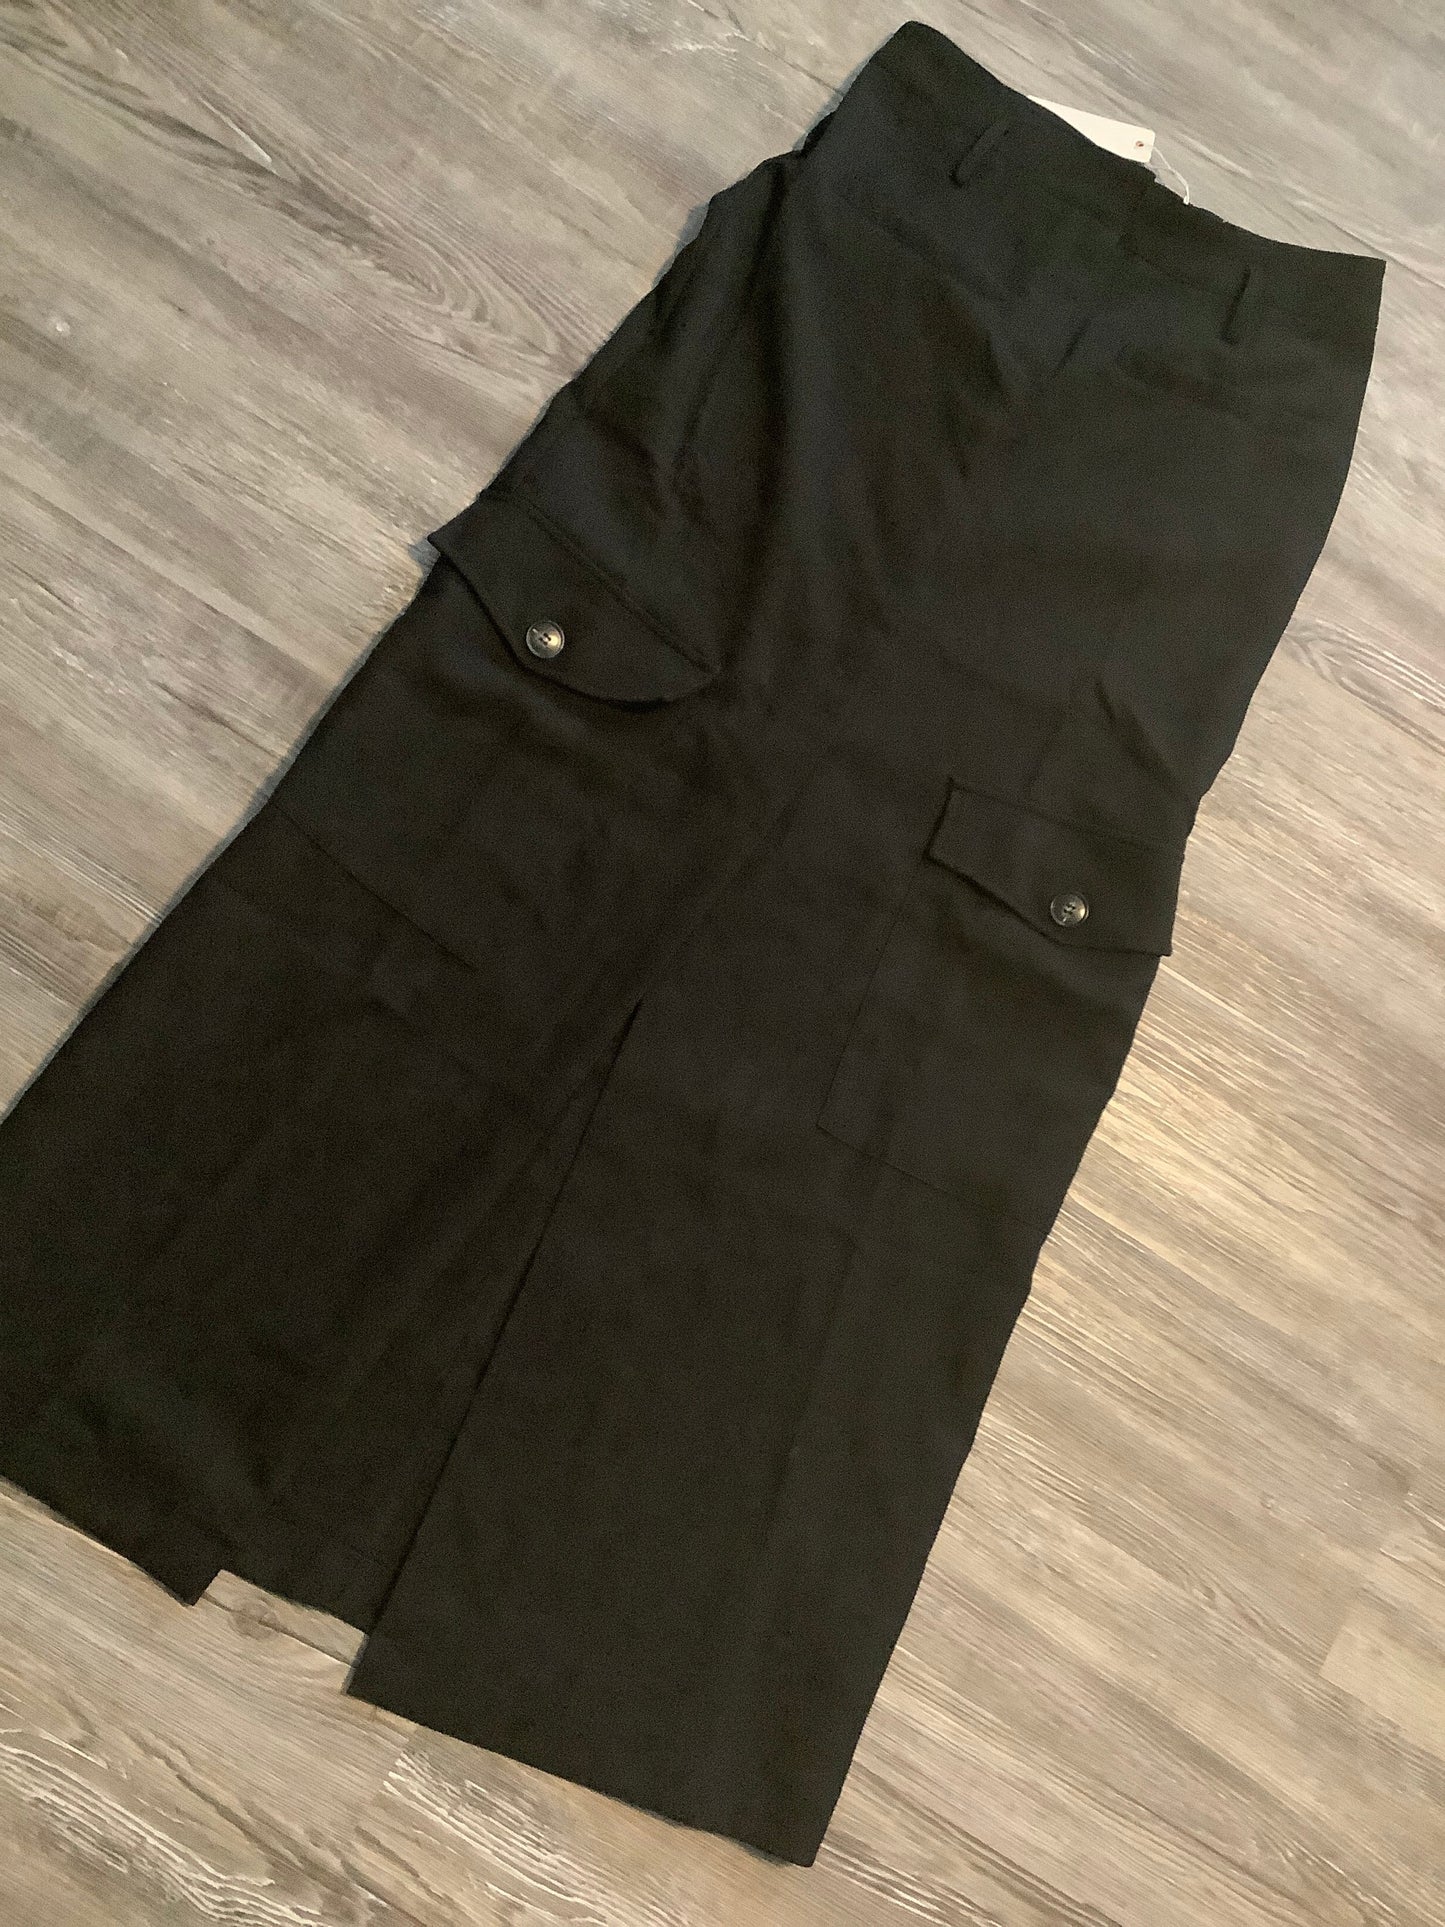 Black Skirt Maxi Olivaceous, Size M